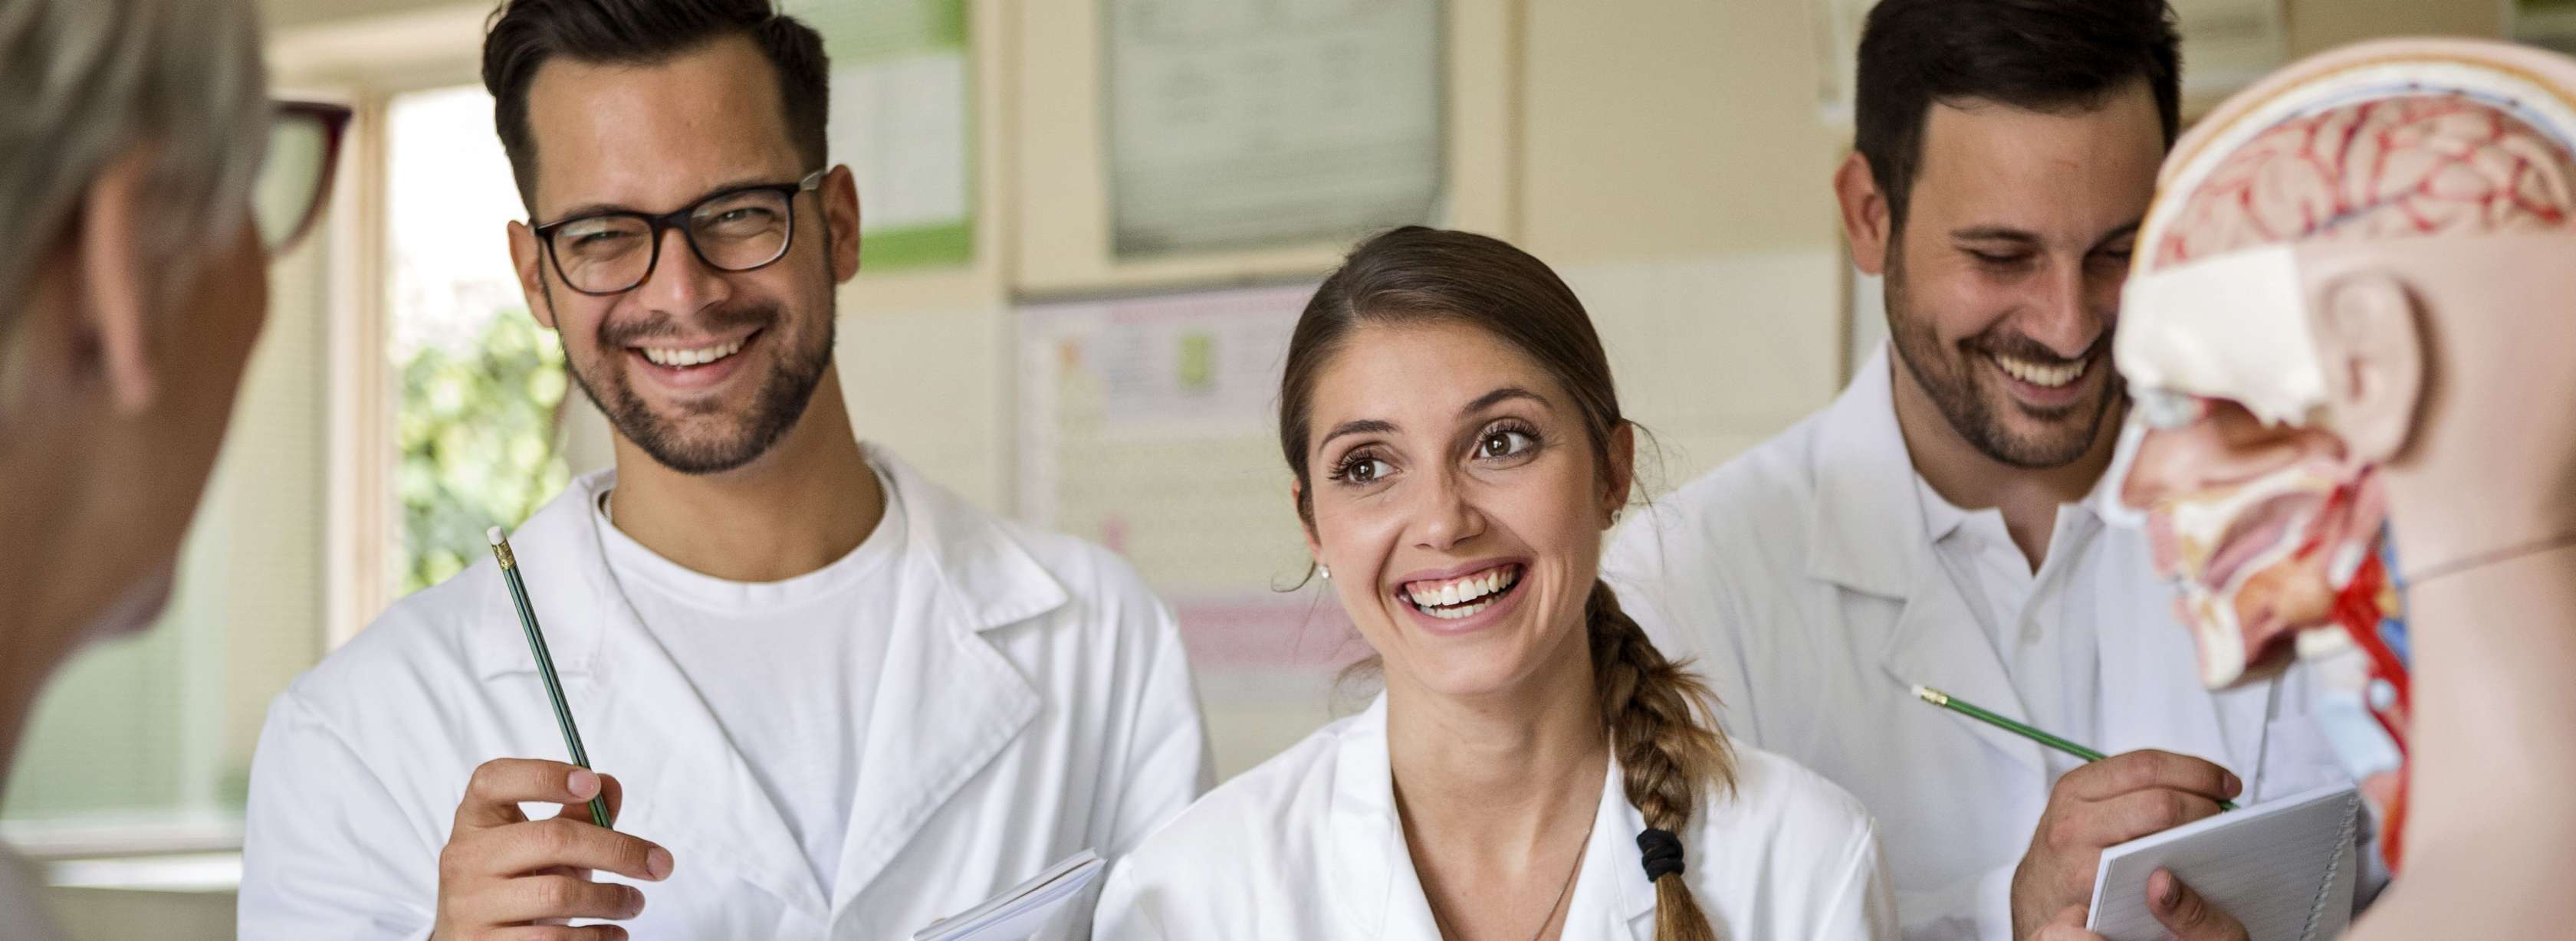 Allianz Private Krankenversicherung für Ärzte: Arzt mit Akte in der Hand lacht mit Patientin 